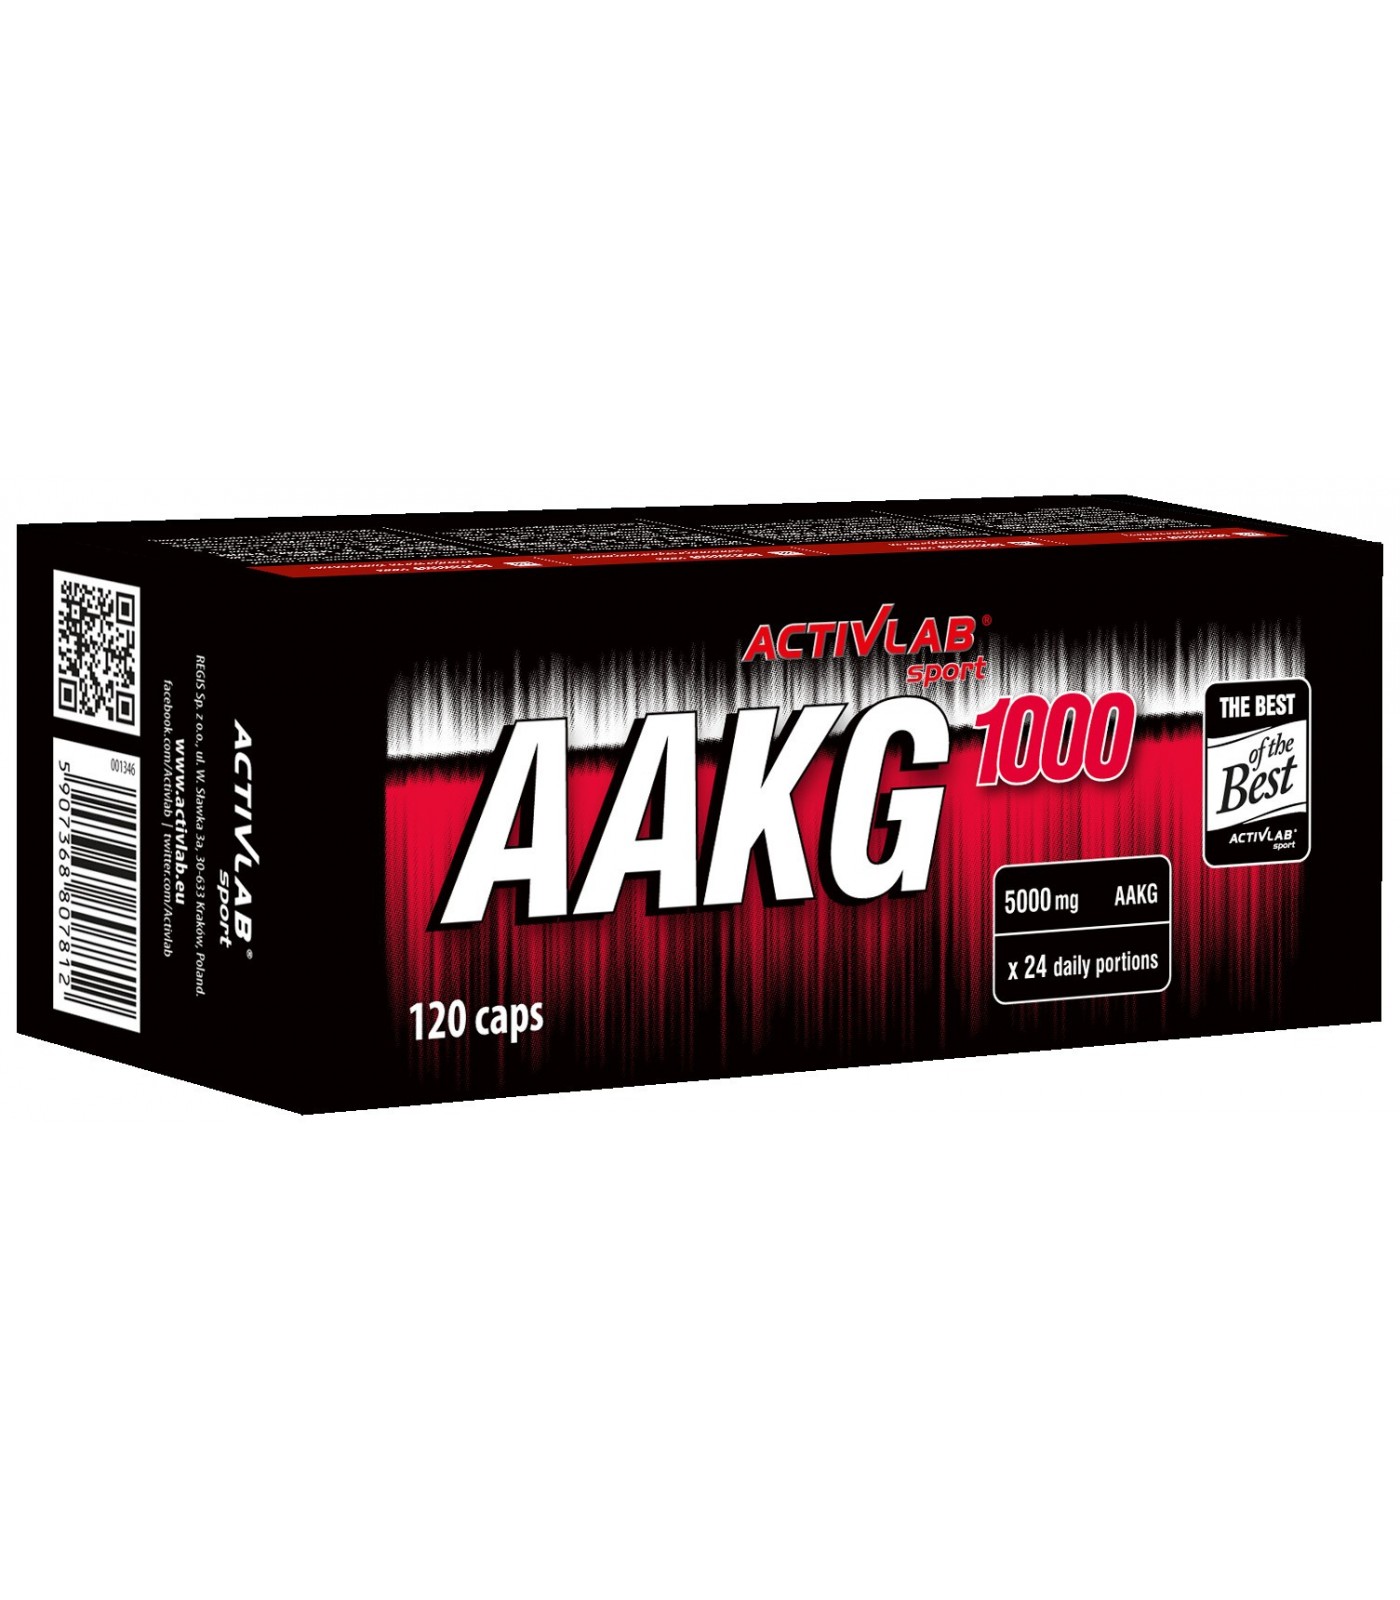 ActivLab -  AAKG 1000 / 120caps.